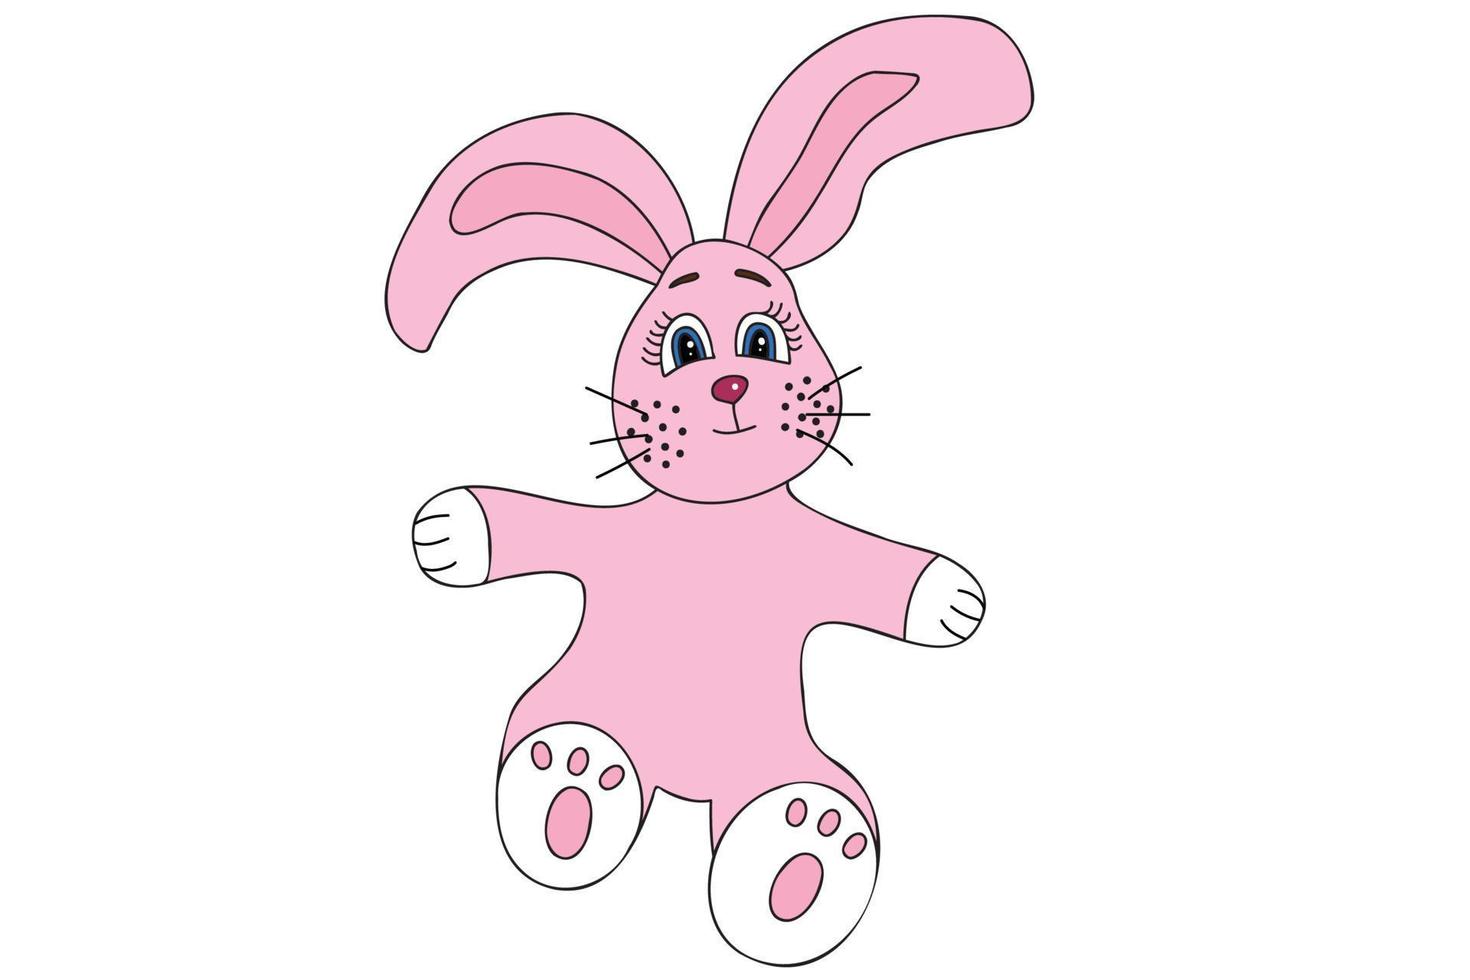 conejo rosa pintado con patas blancas, diseñado para año nuevo, navidad, tarjetas, ropa e impresión de telas, impresión y se puede usar en varias ocasiones vector